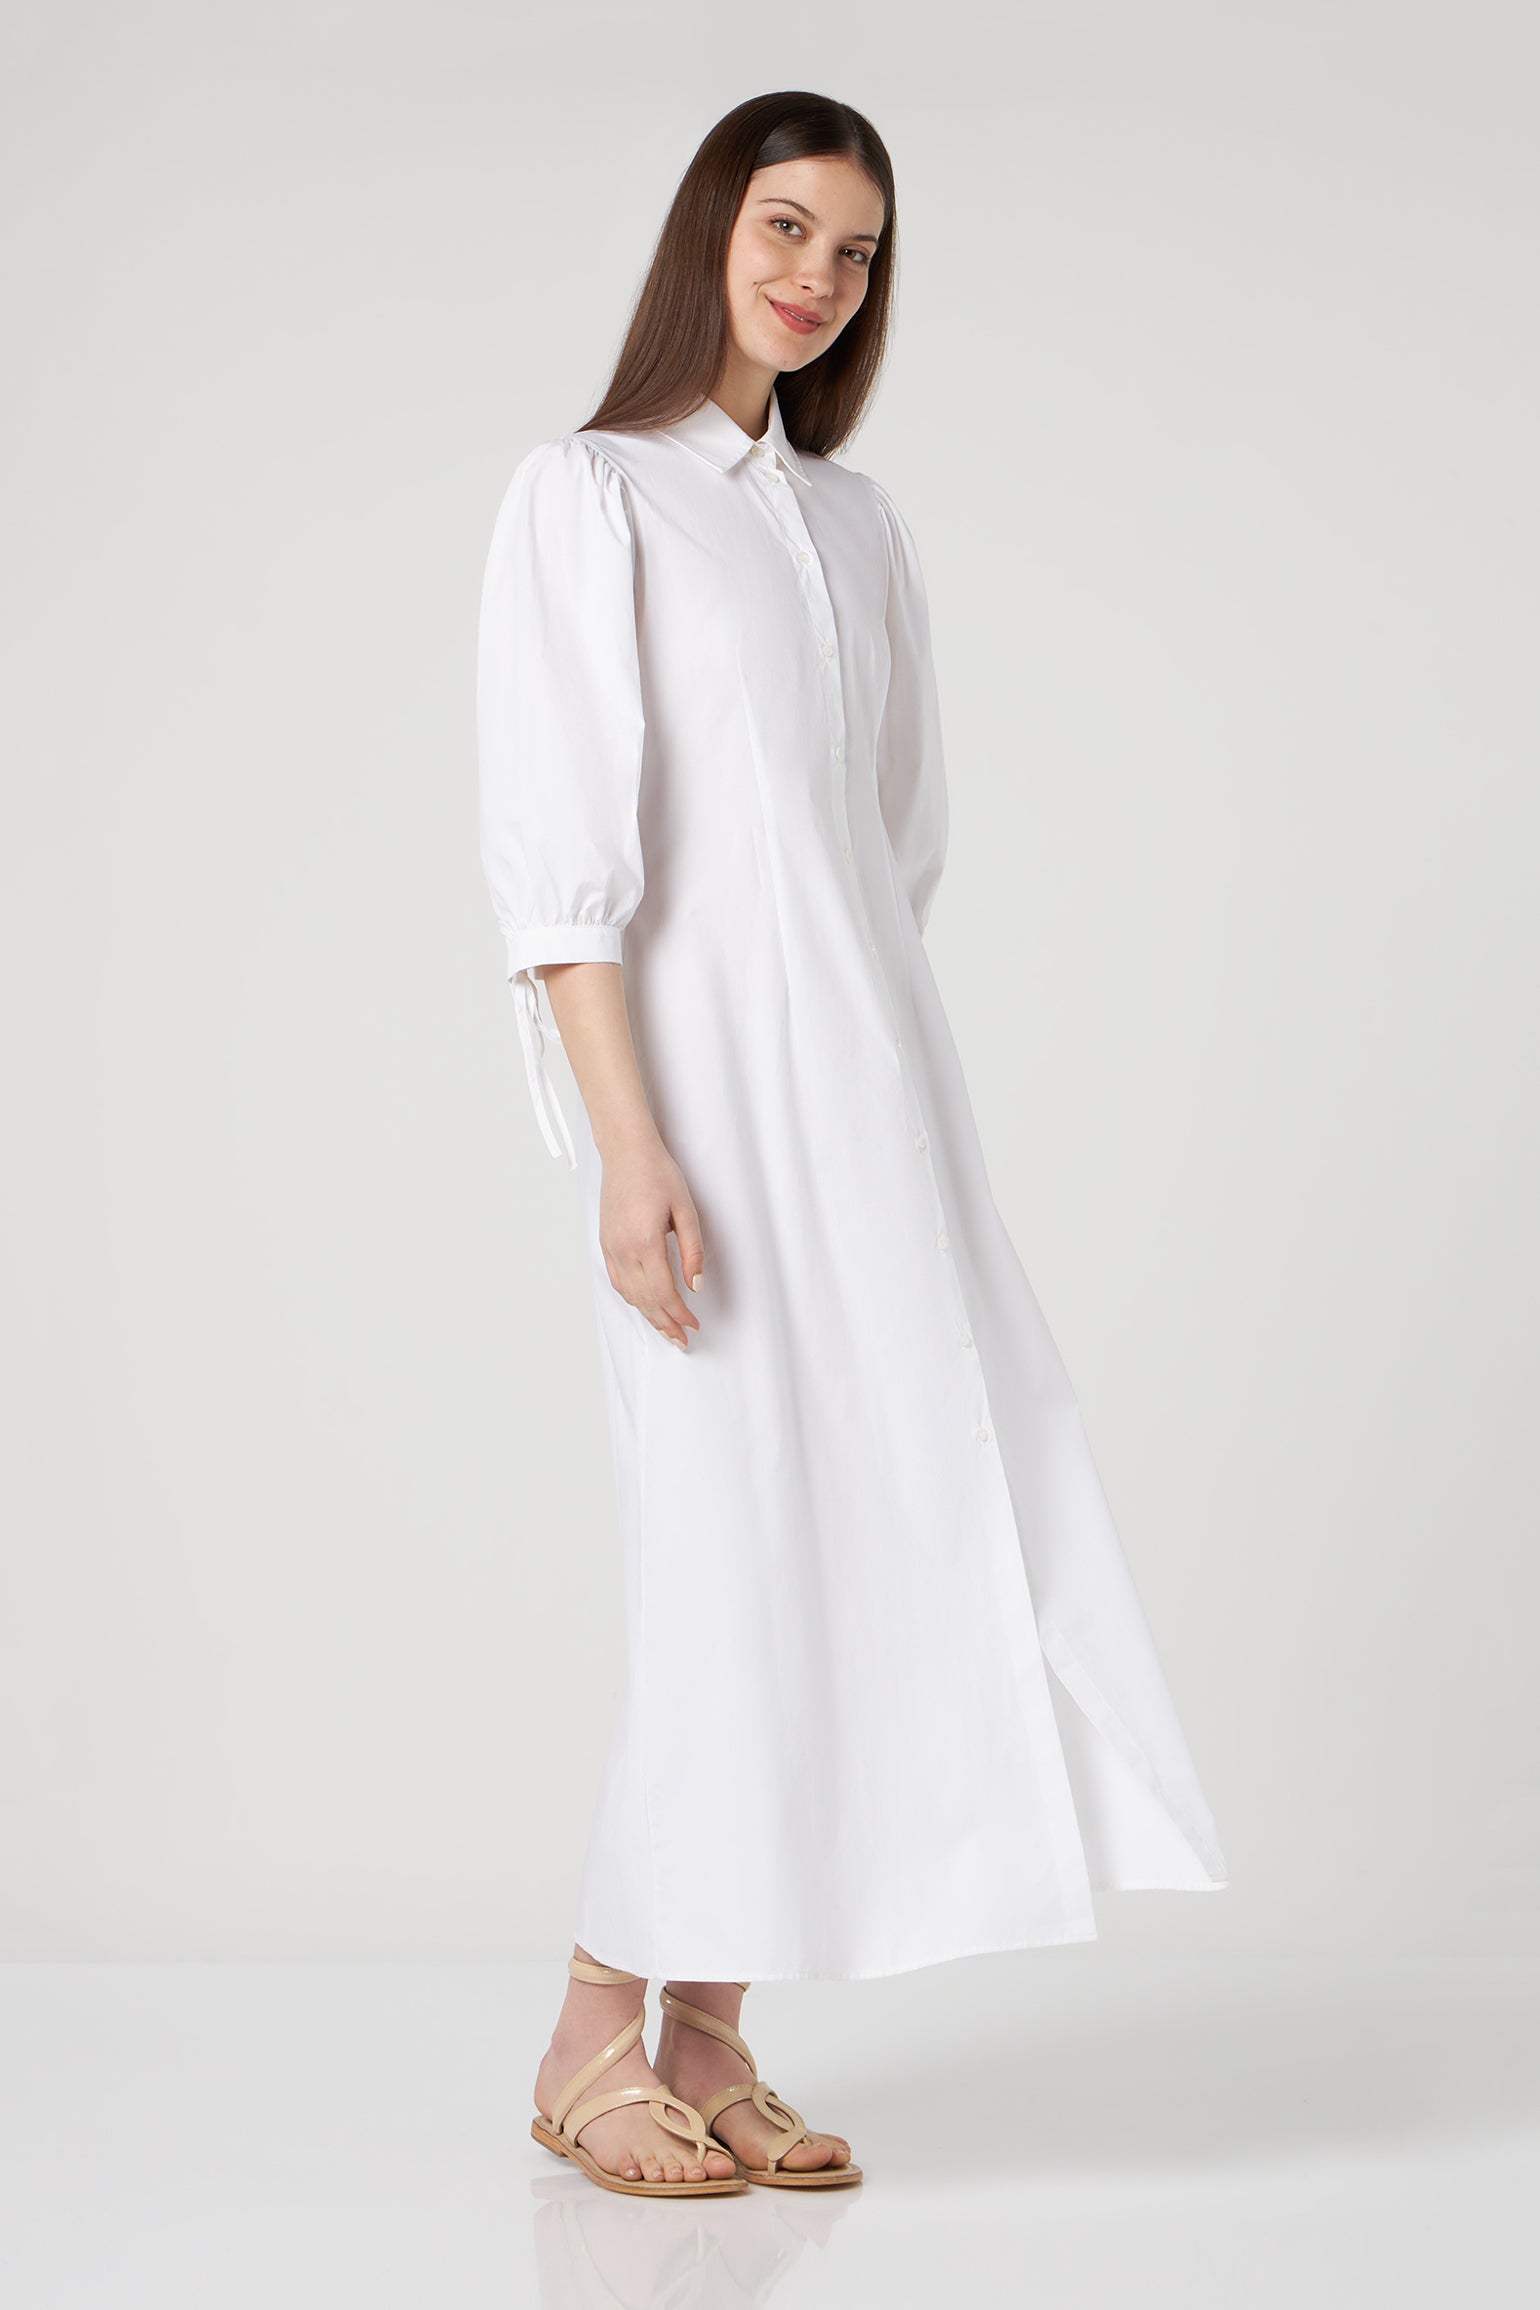 LIU JO White Poplin Long Dress